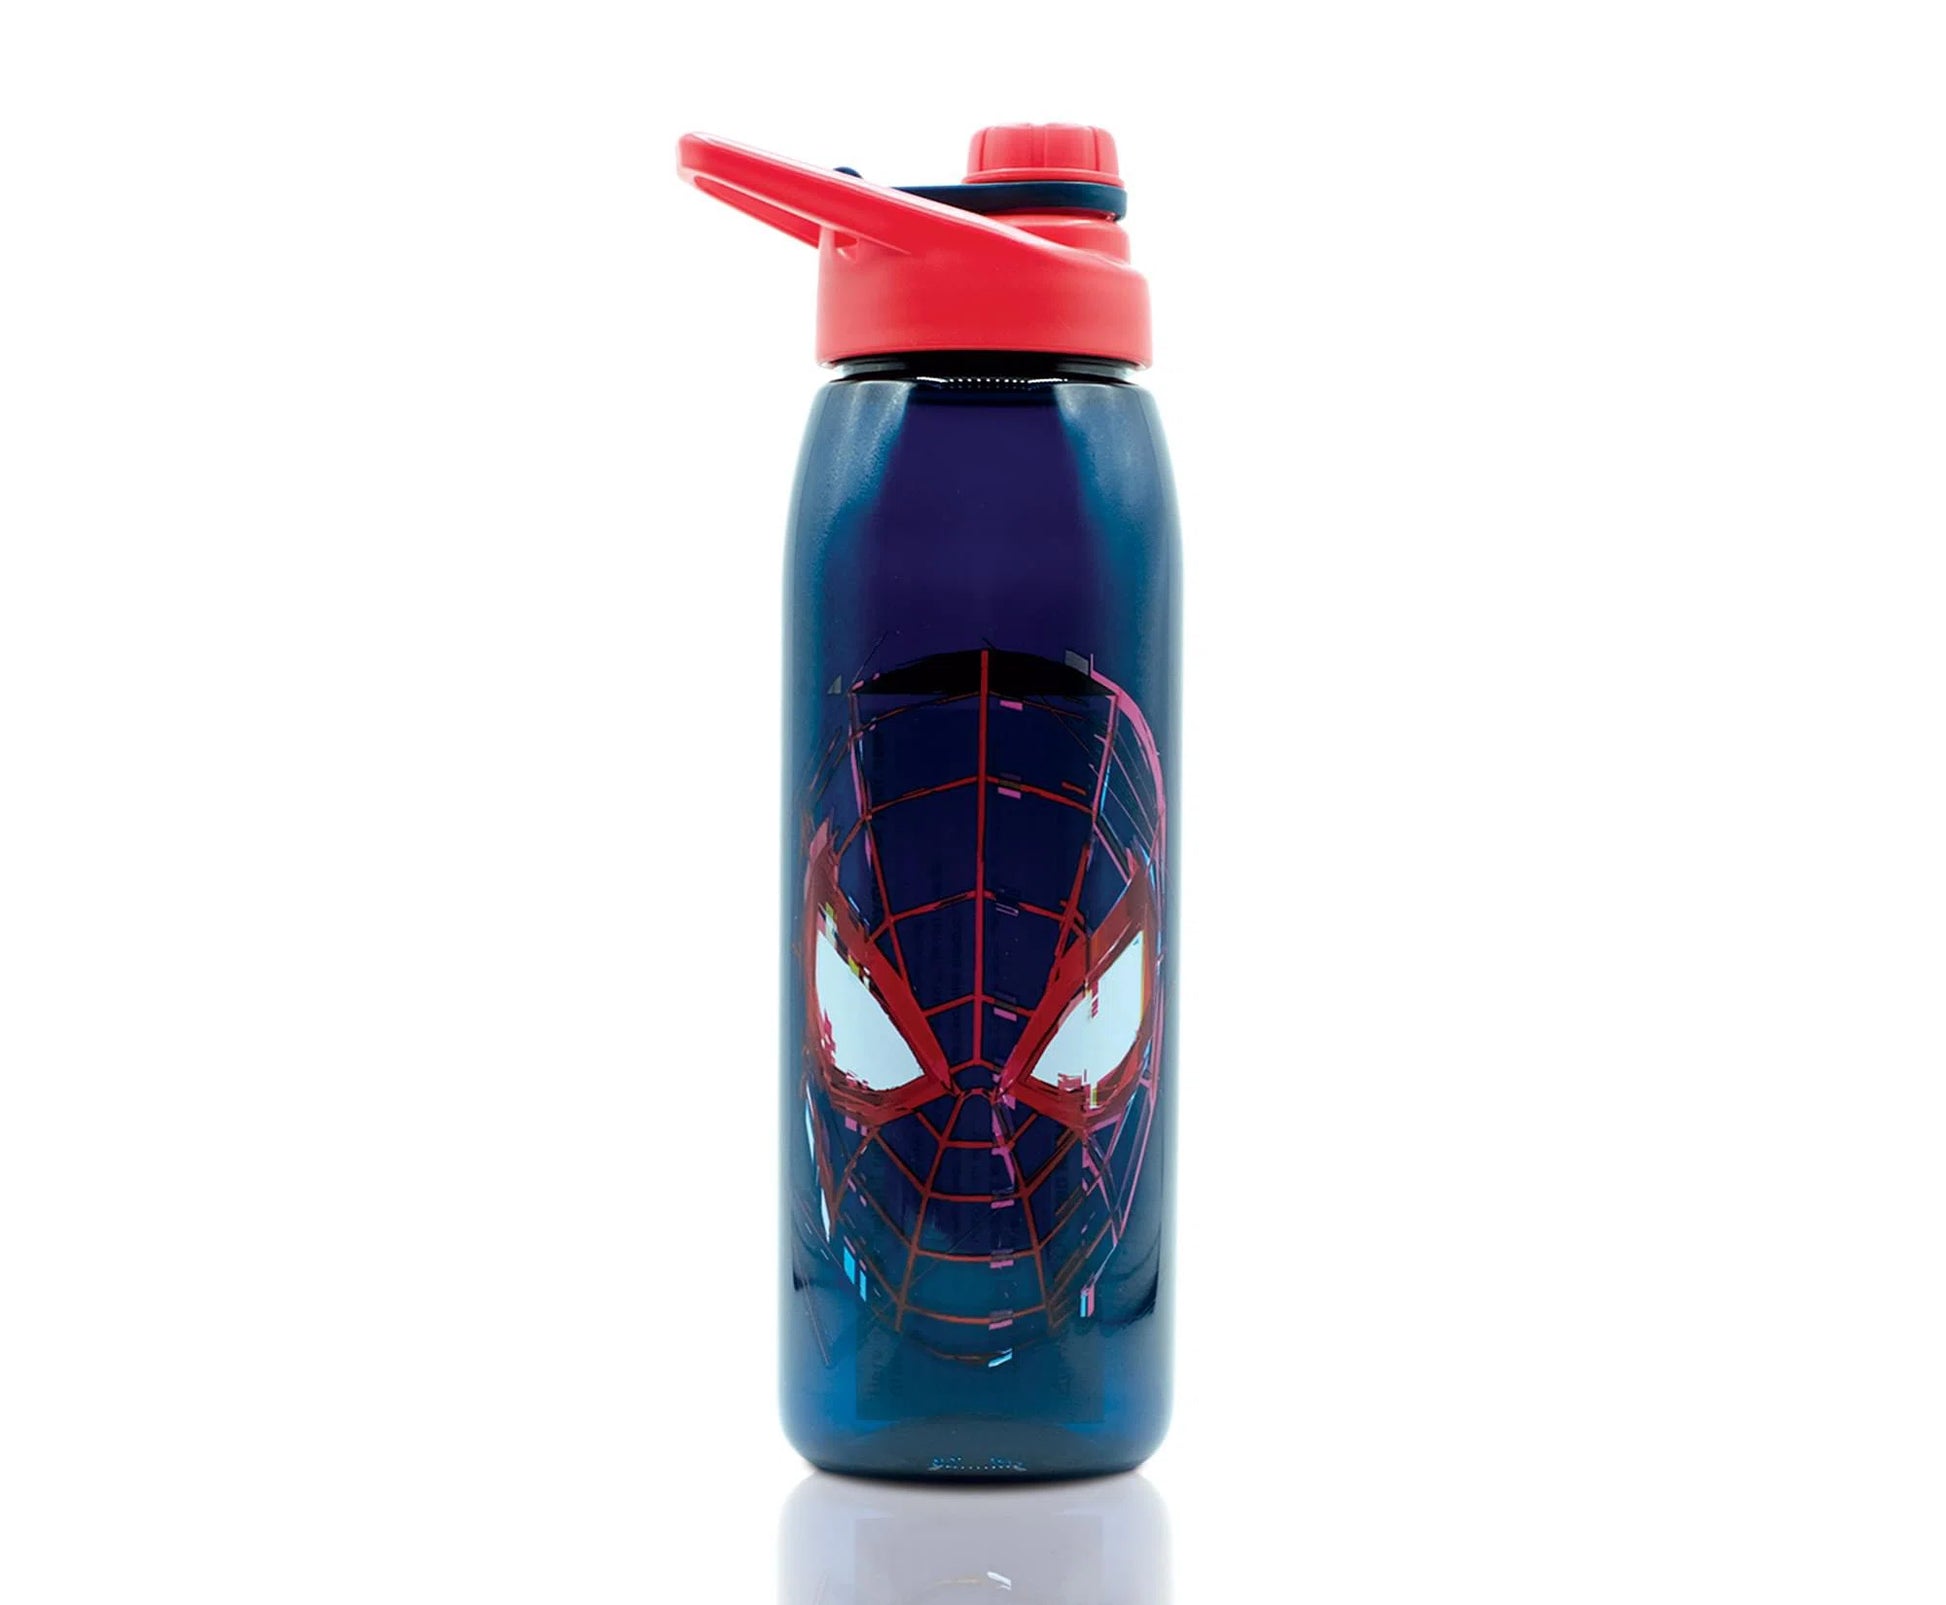 BIOWORLD Spider-Man Miles Morales 24oz. Water Bottle